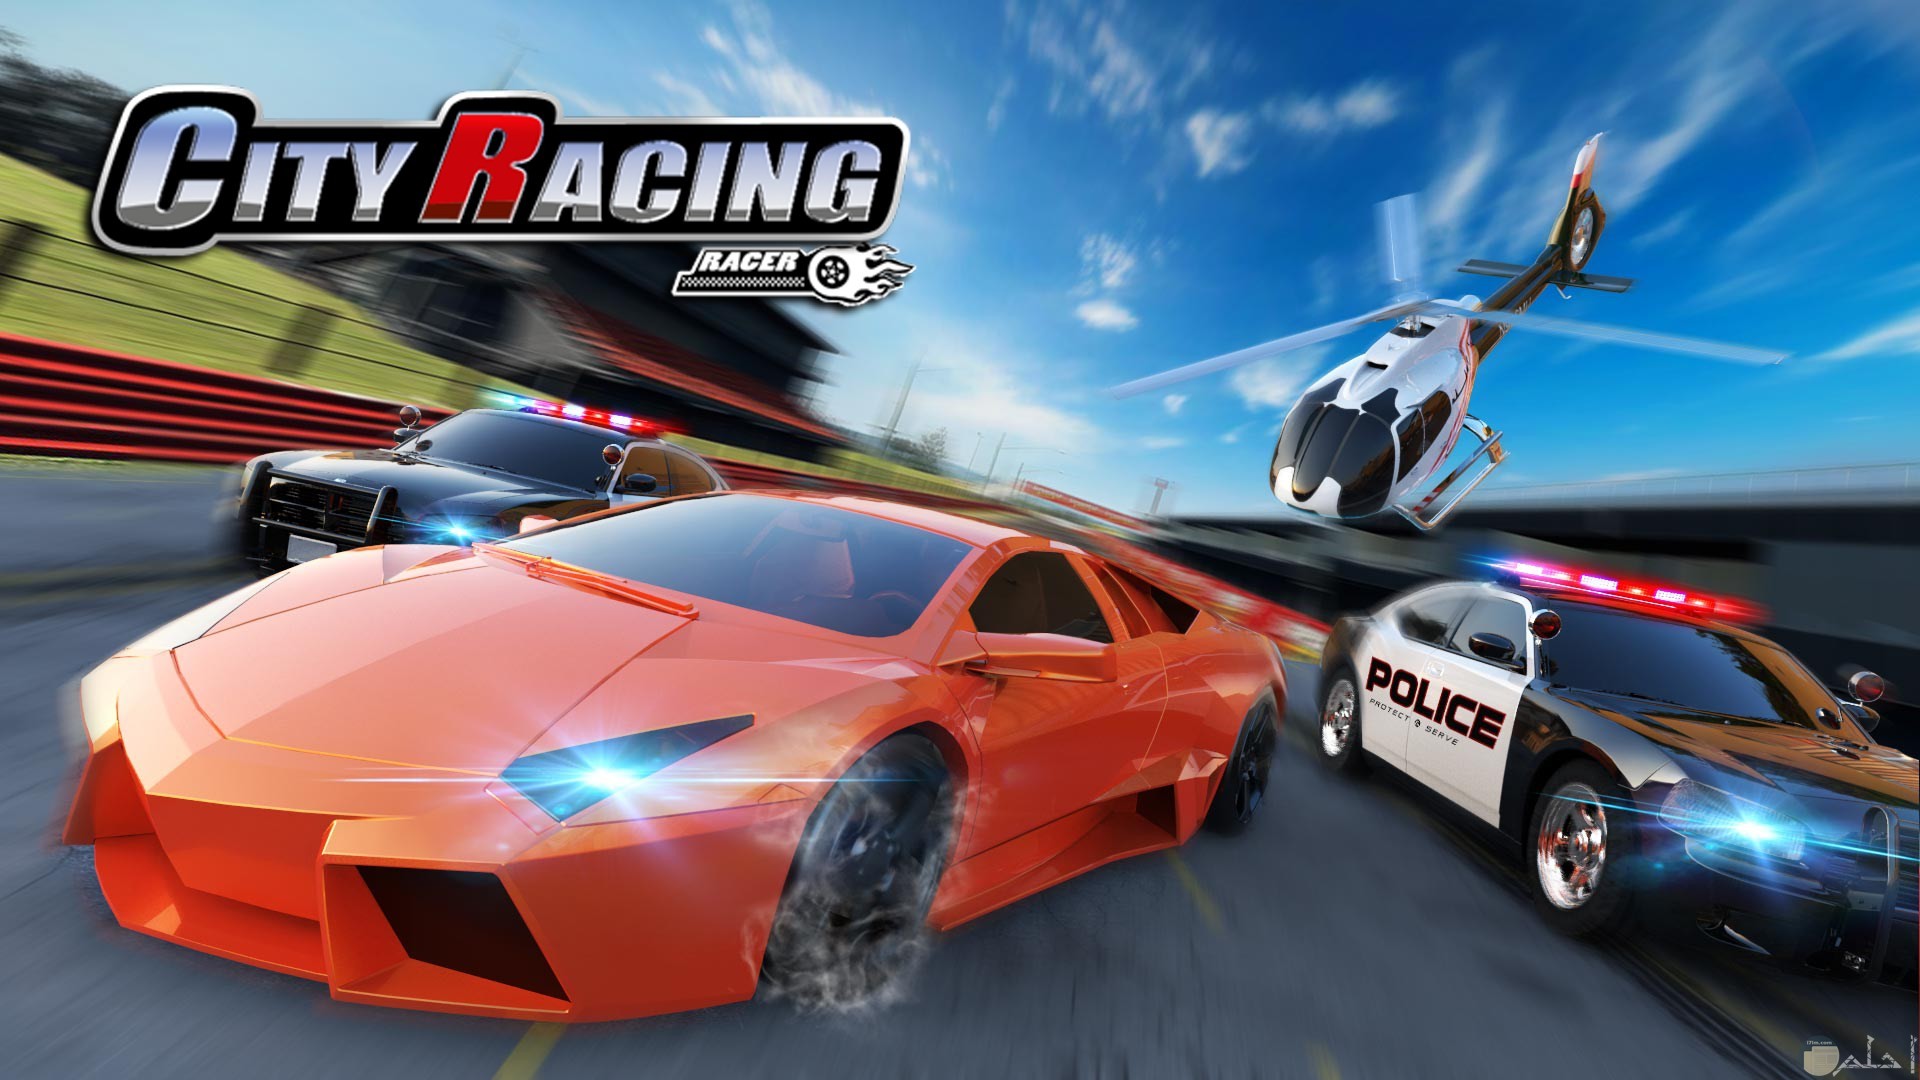 لعبة سباق السيارات City Racing 3D للكمبيوتر والموبايل